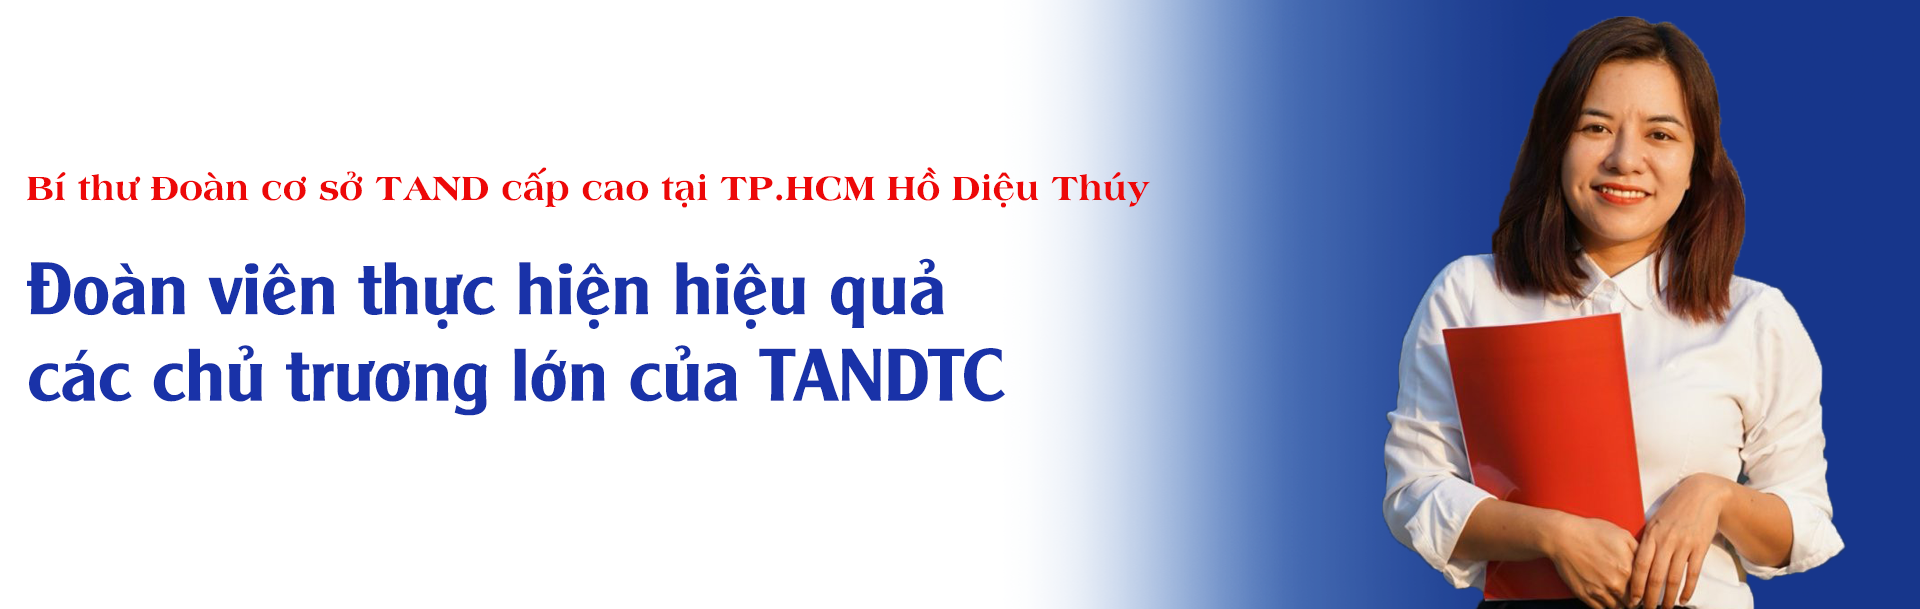 ta-cc.png